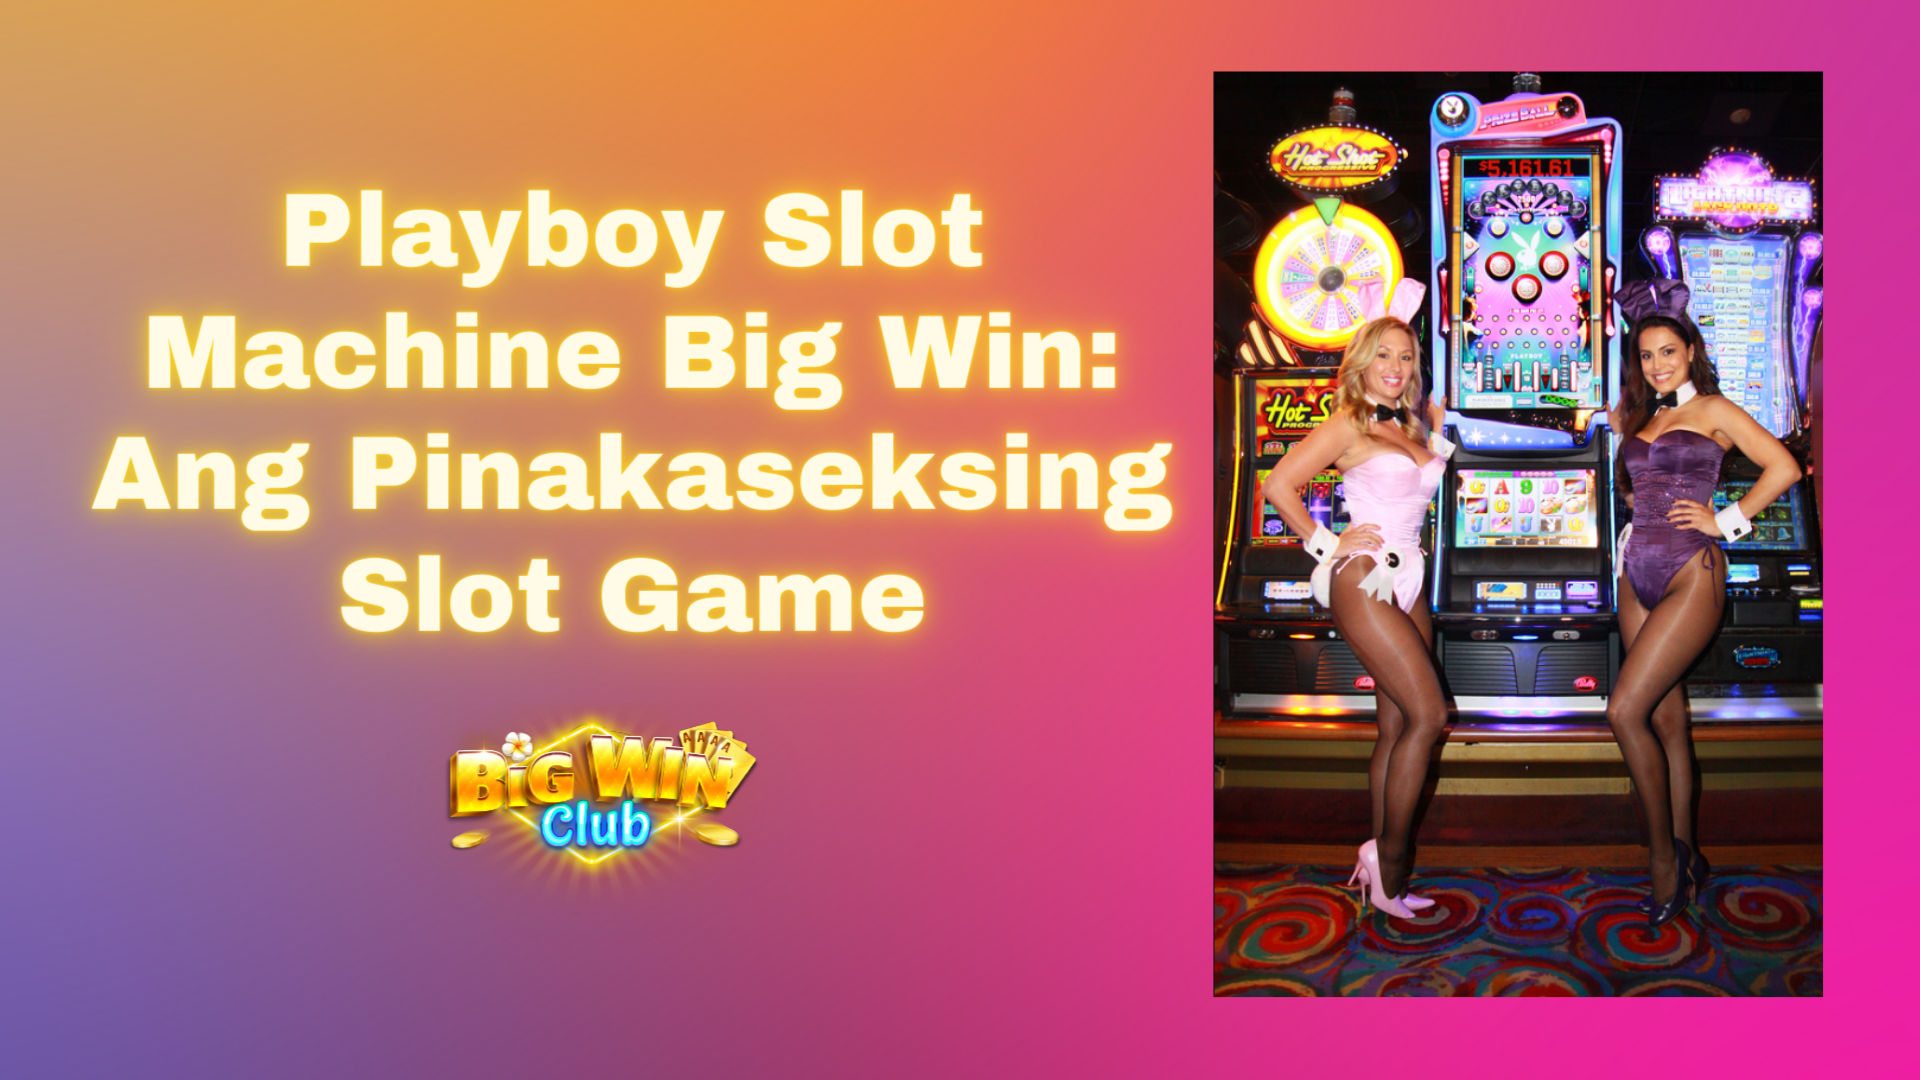 Playboy Slot Machine Big Win: Ang Pinakaseksing Slot Game